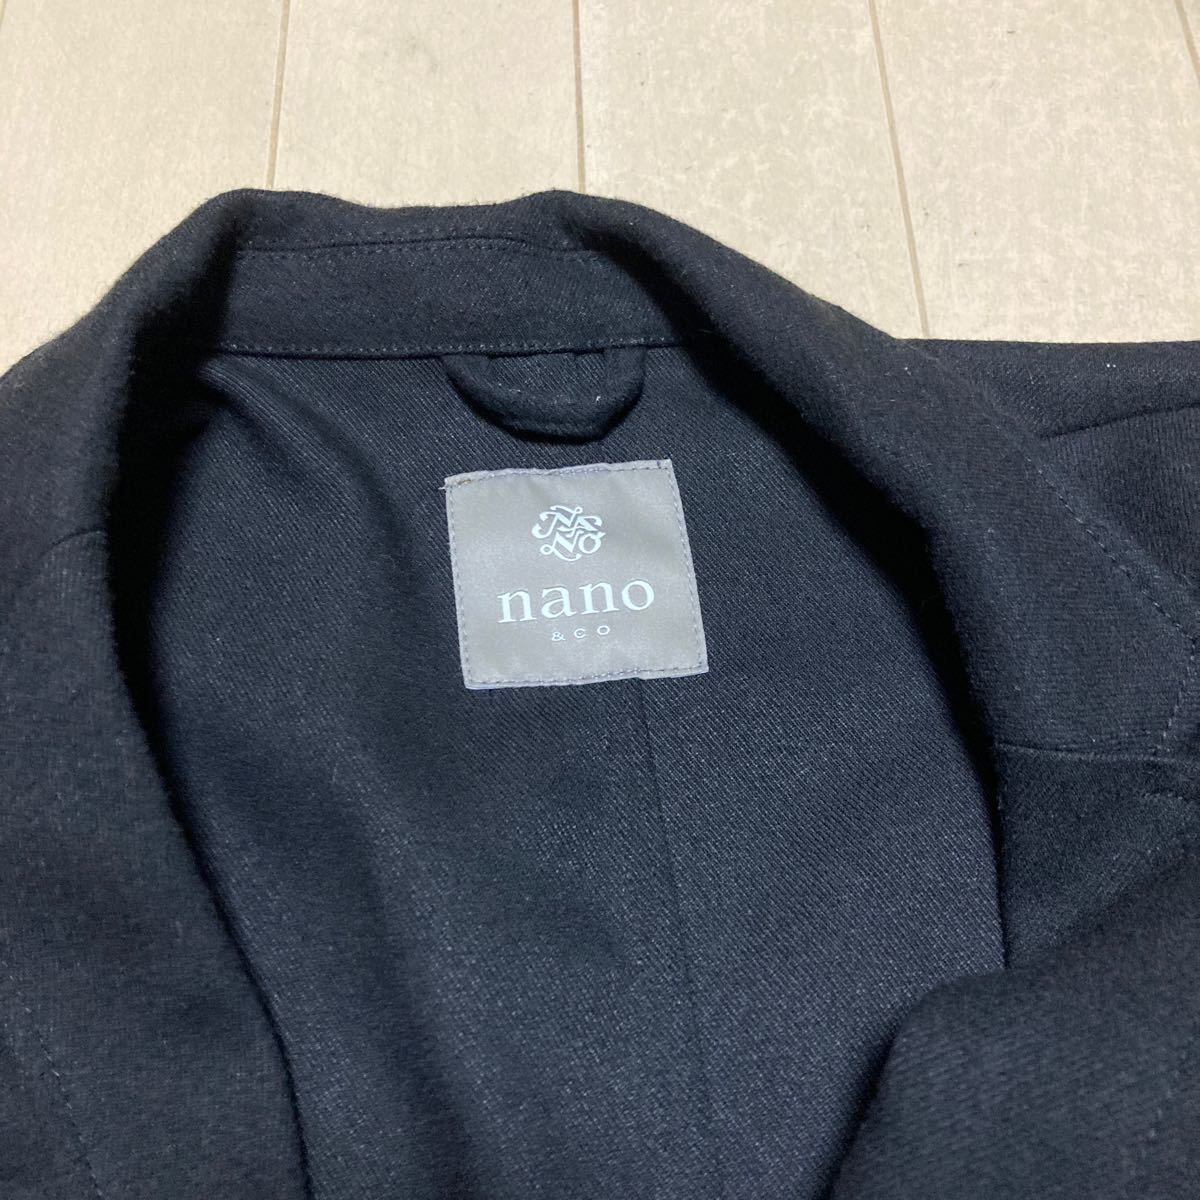  nano * Universe пальто чёрный XL